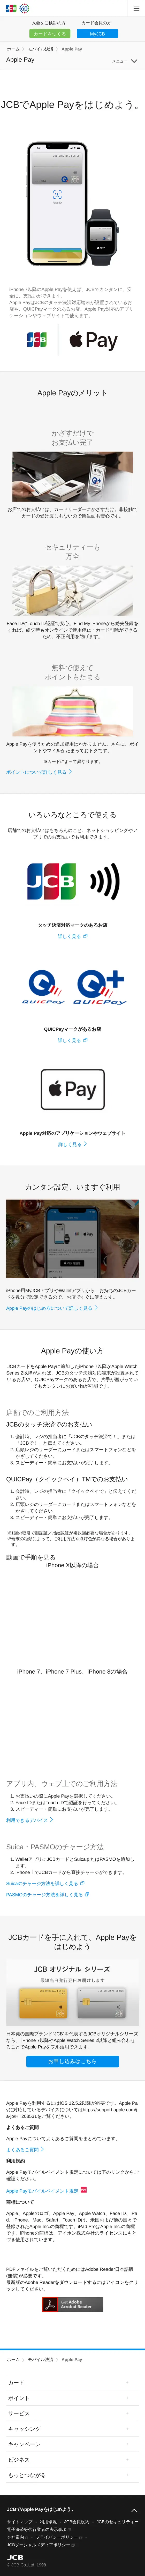 キャプチャ画面 会社名:株式会社ジェーシービープロジェクト名:Apple Pay 画面名:A デバイス名:SPカテゴリ:金融・保険タグ:A,SP